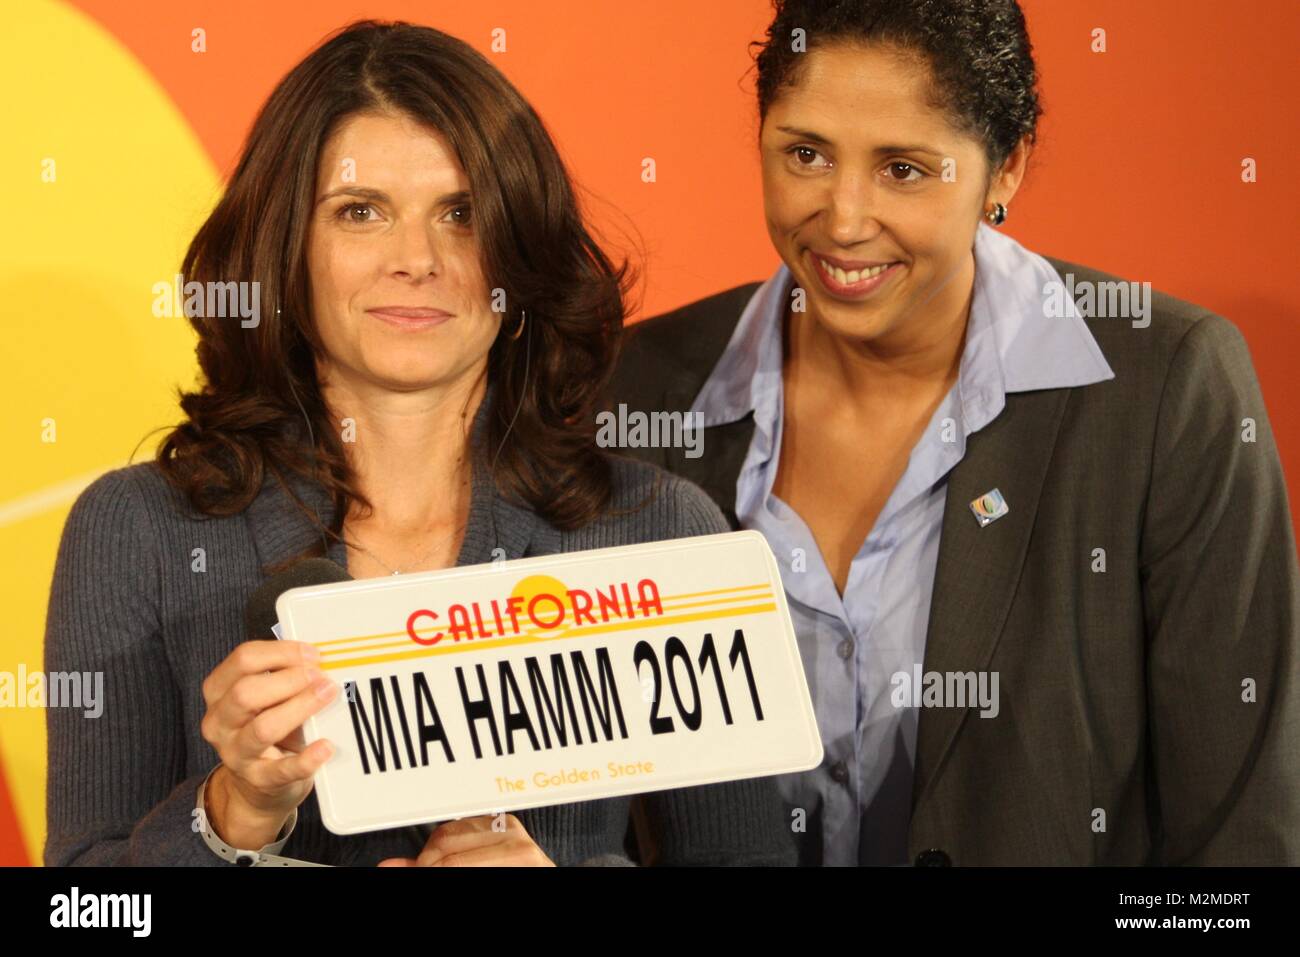 Im Rahmen des Länderspiels Deutschland gegen die USA (29.10.2009, Augsburg) wurde die ehemalige Weltfußballerin Mia Hamm als internationale Botschafterin für die Frauenfußball-Weltmeisterschaft 2011 in Deutschland vorgestellt. Stock Photo